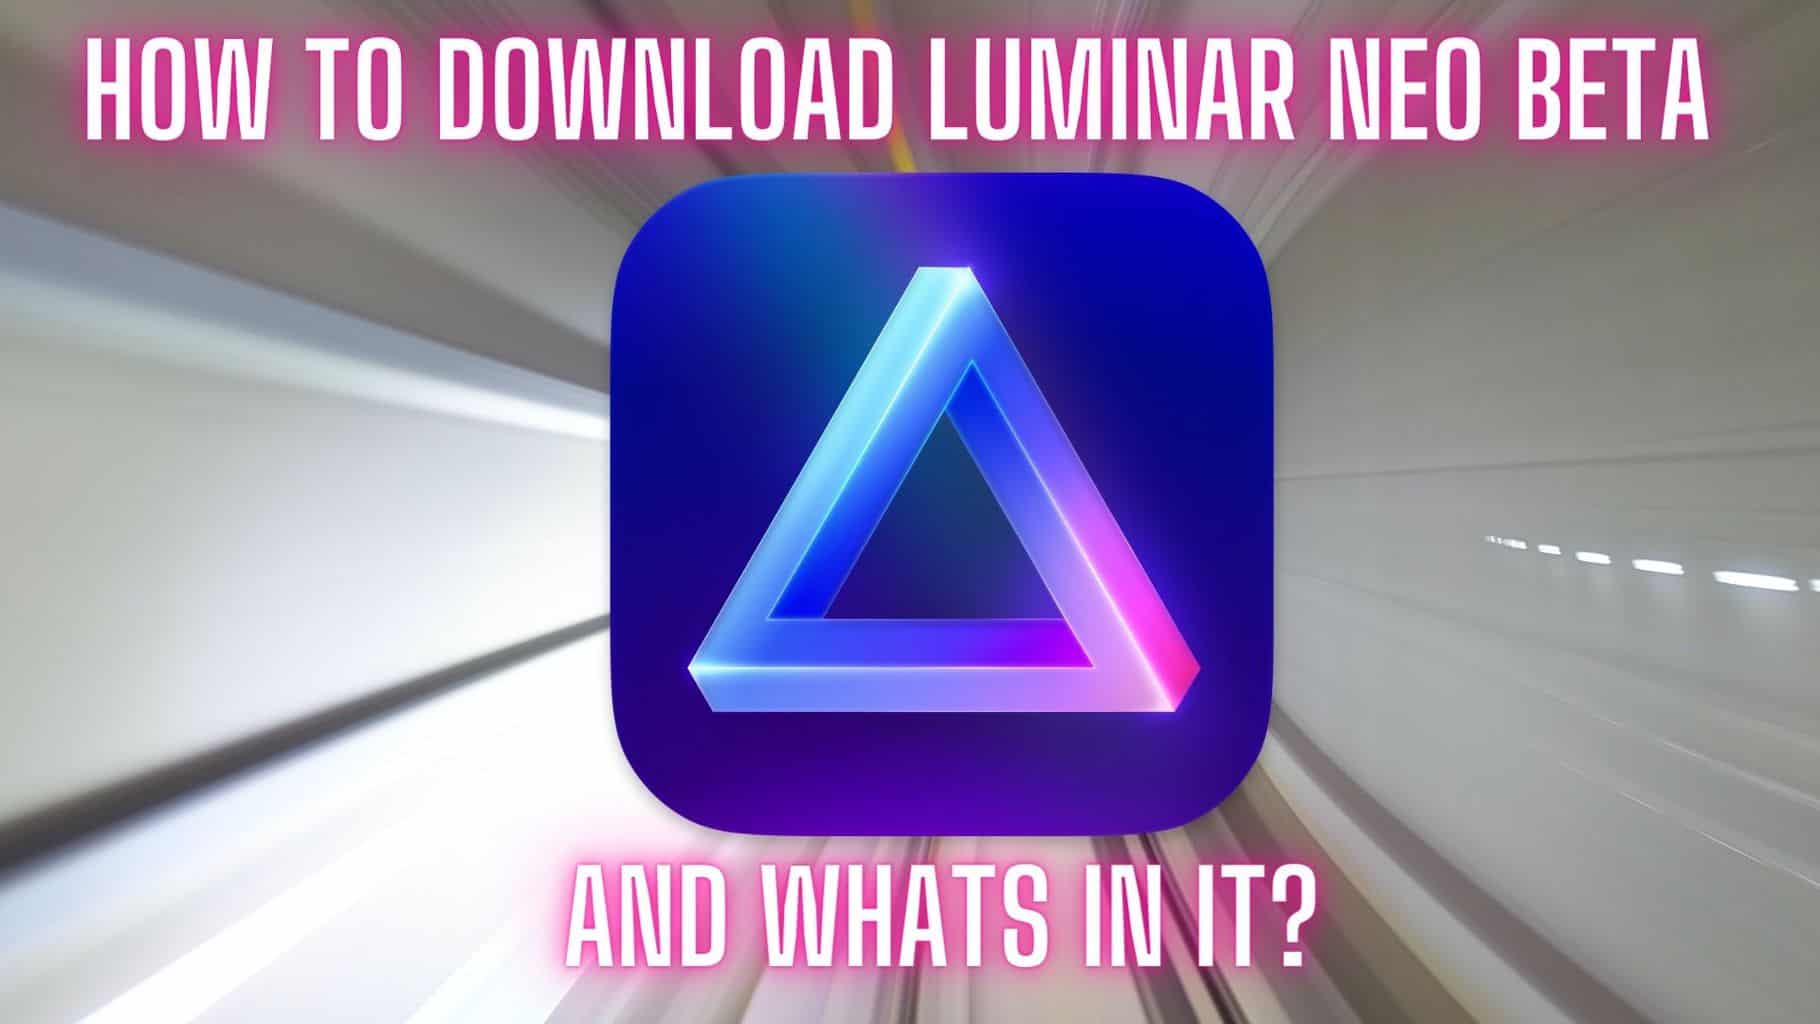 free download Luminar Neo 1.12.2.11818